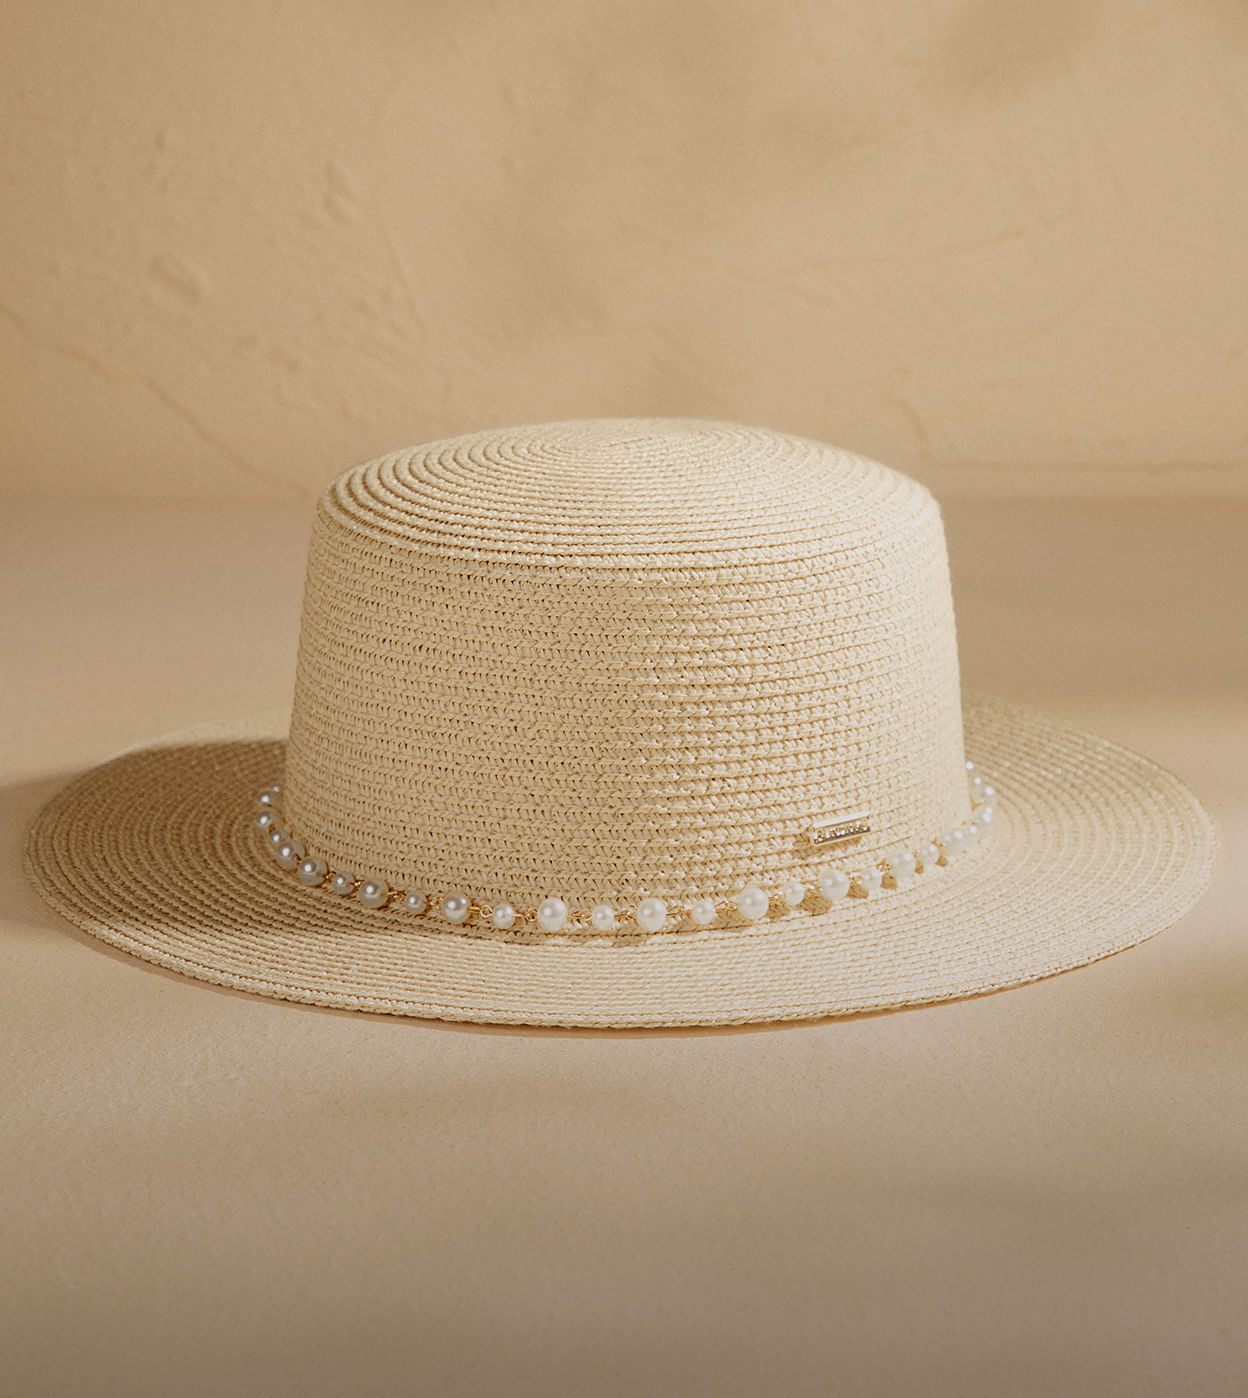 Foto de sombrero de ala pequeña en color beige